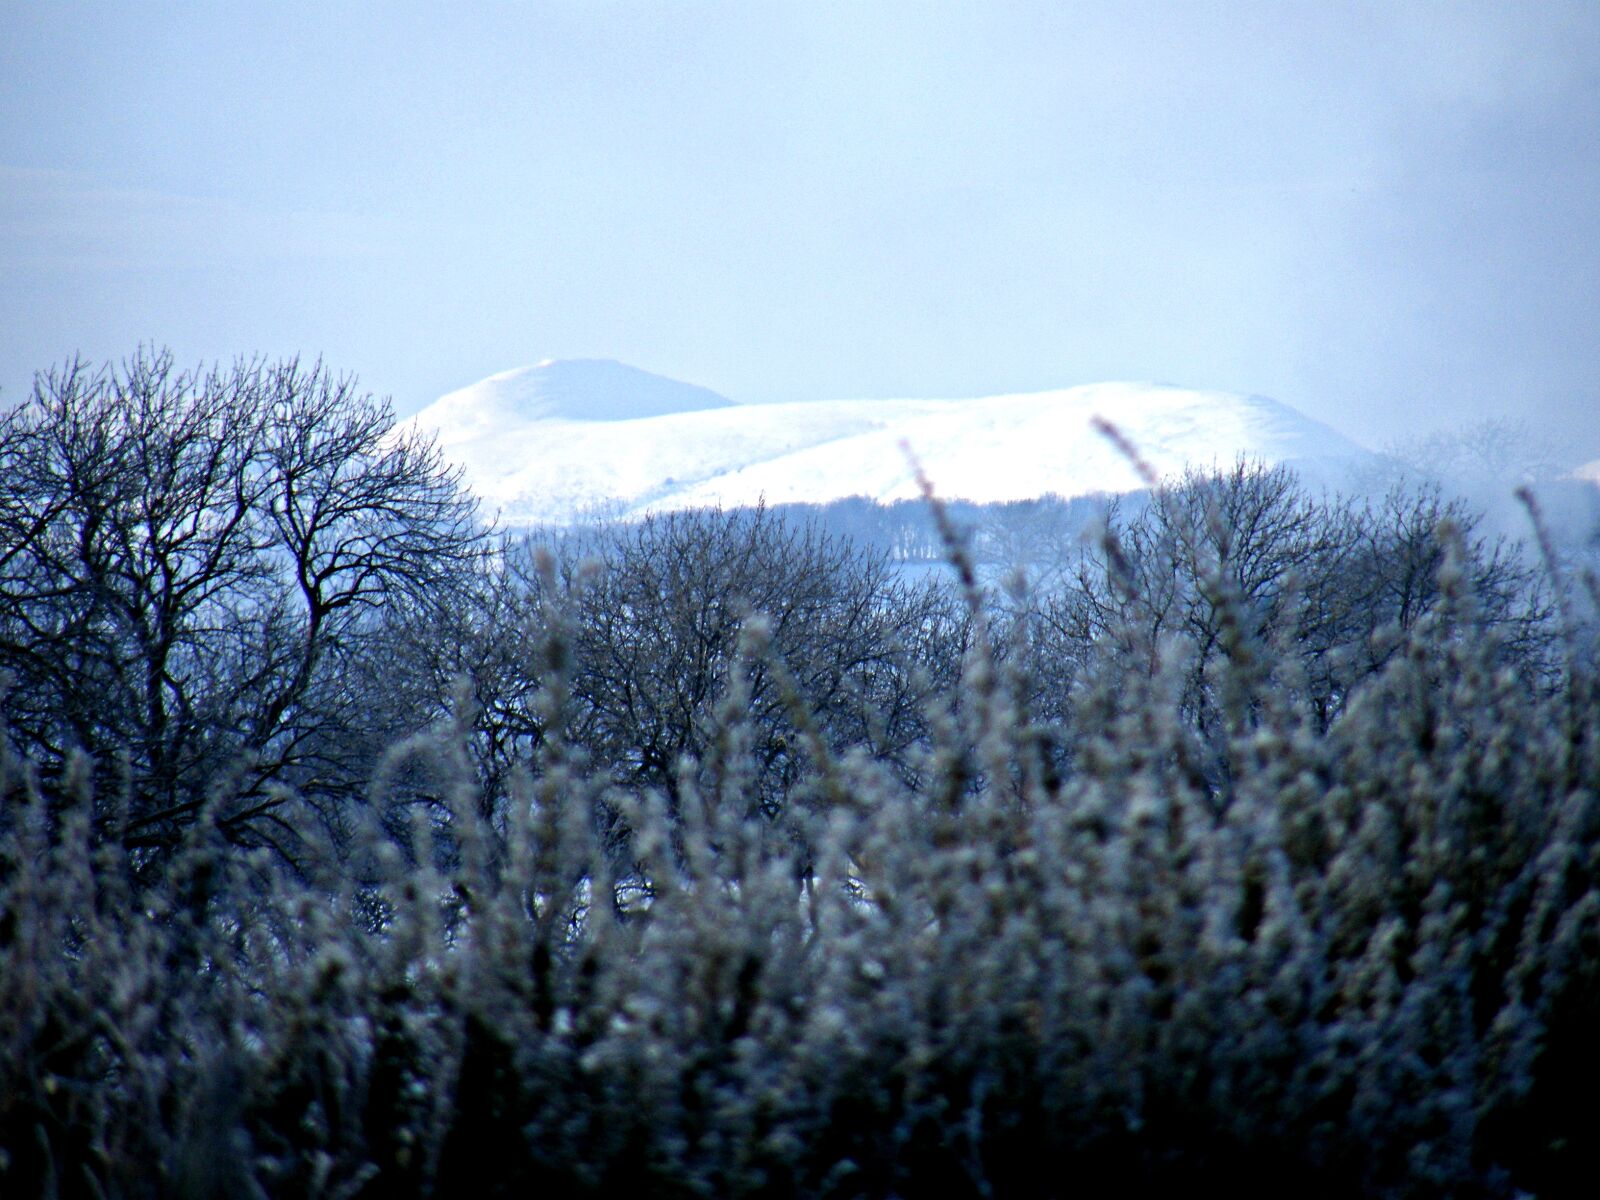 Fujifilm FinePix S8000fd sample photo. Mountain, snow, mountains photography